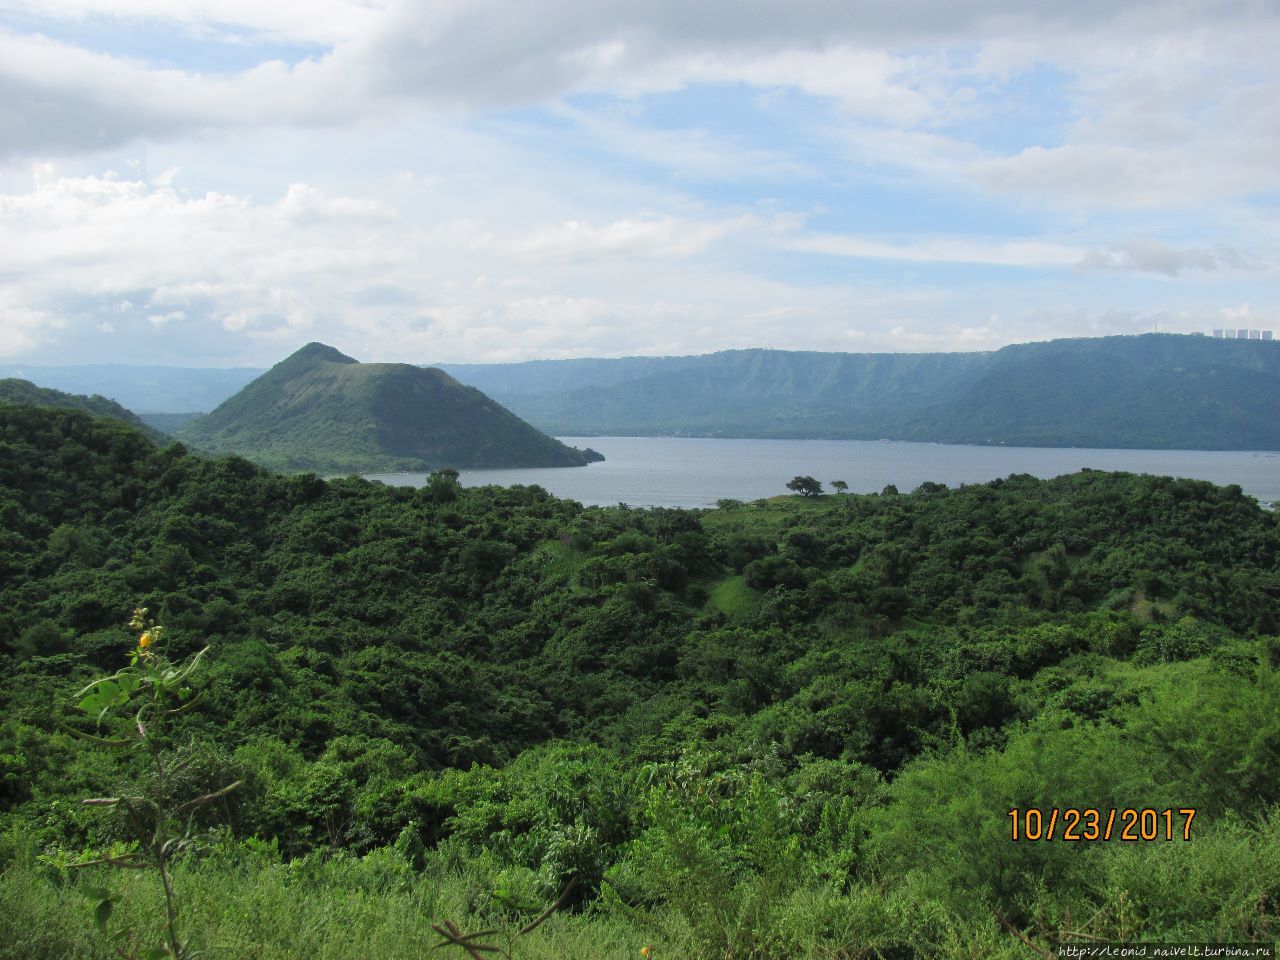 Филиппины. Самый маленький в мире вулкан, или за чашей Тааля Вулканический остров Тааль, Филиппины